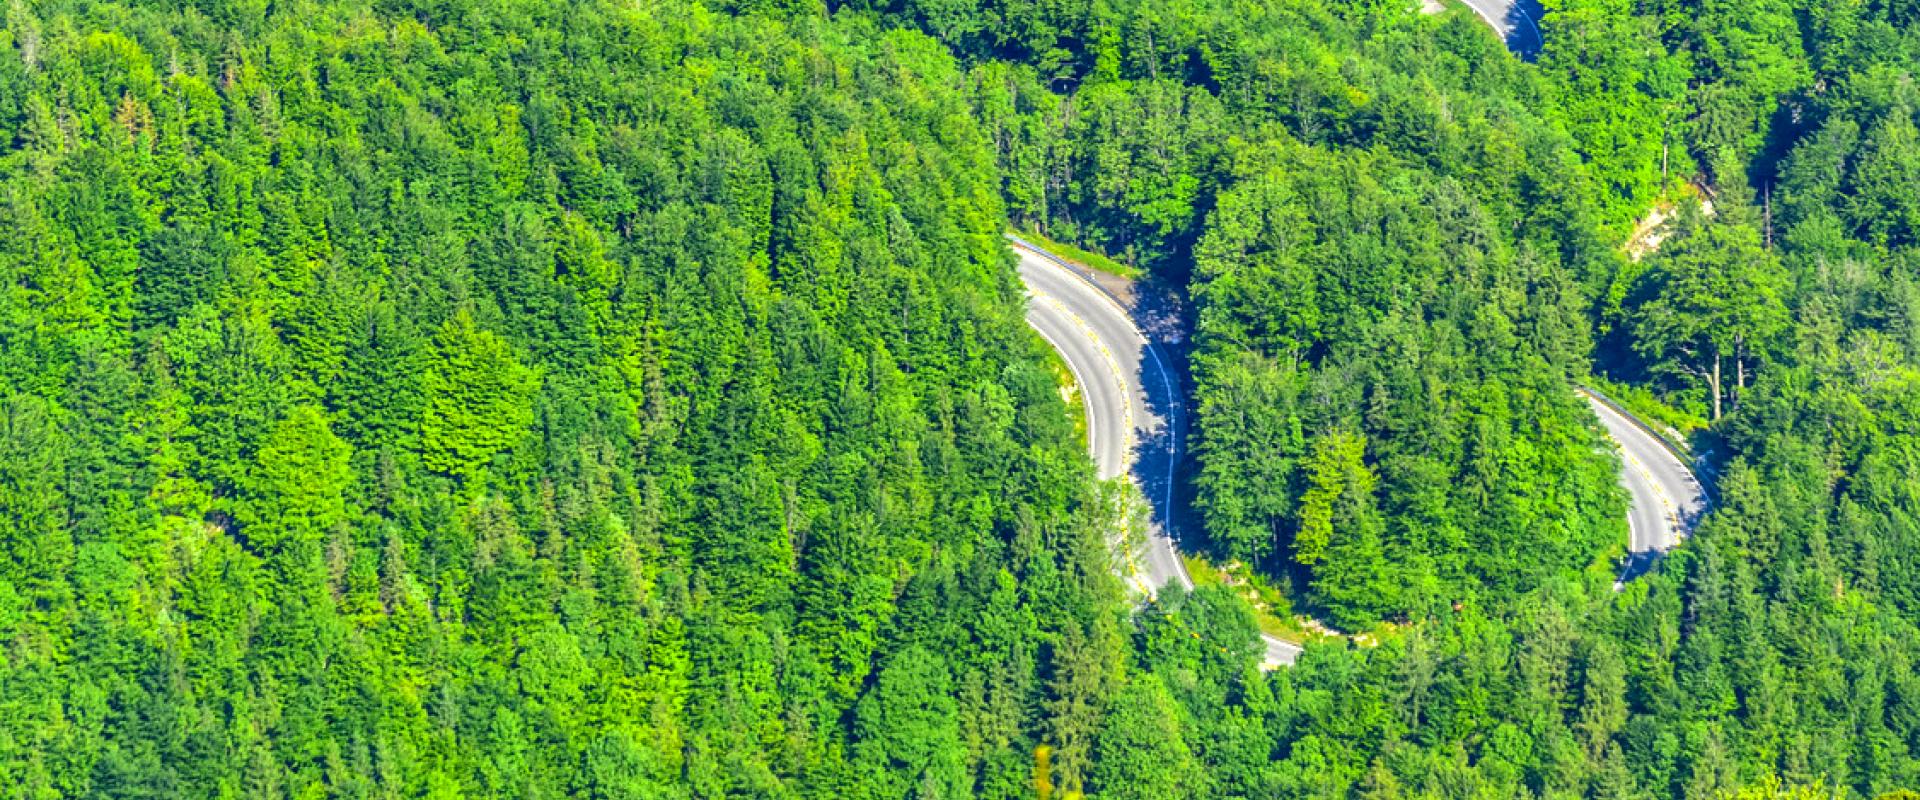 Verlauf der Kesselbergstraße inmitten von Wäldern